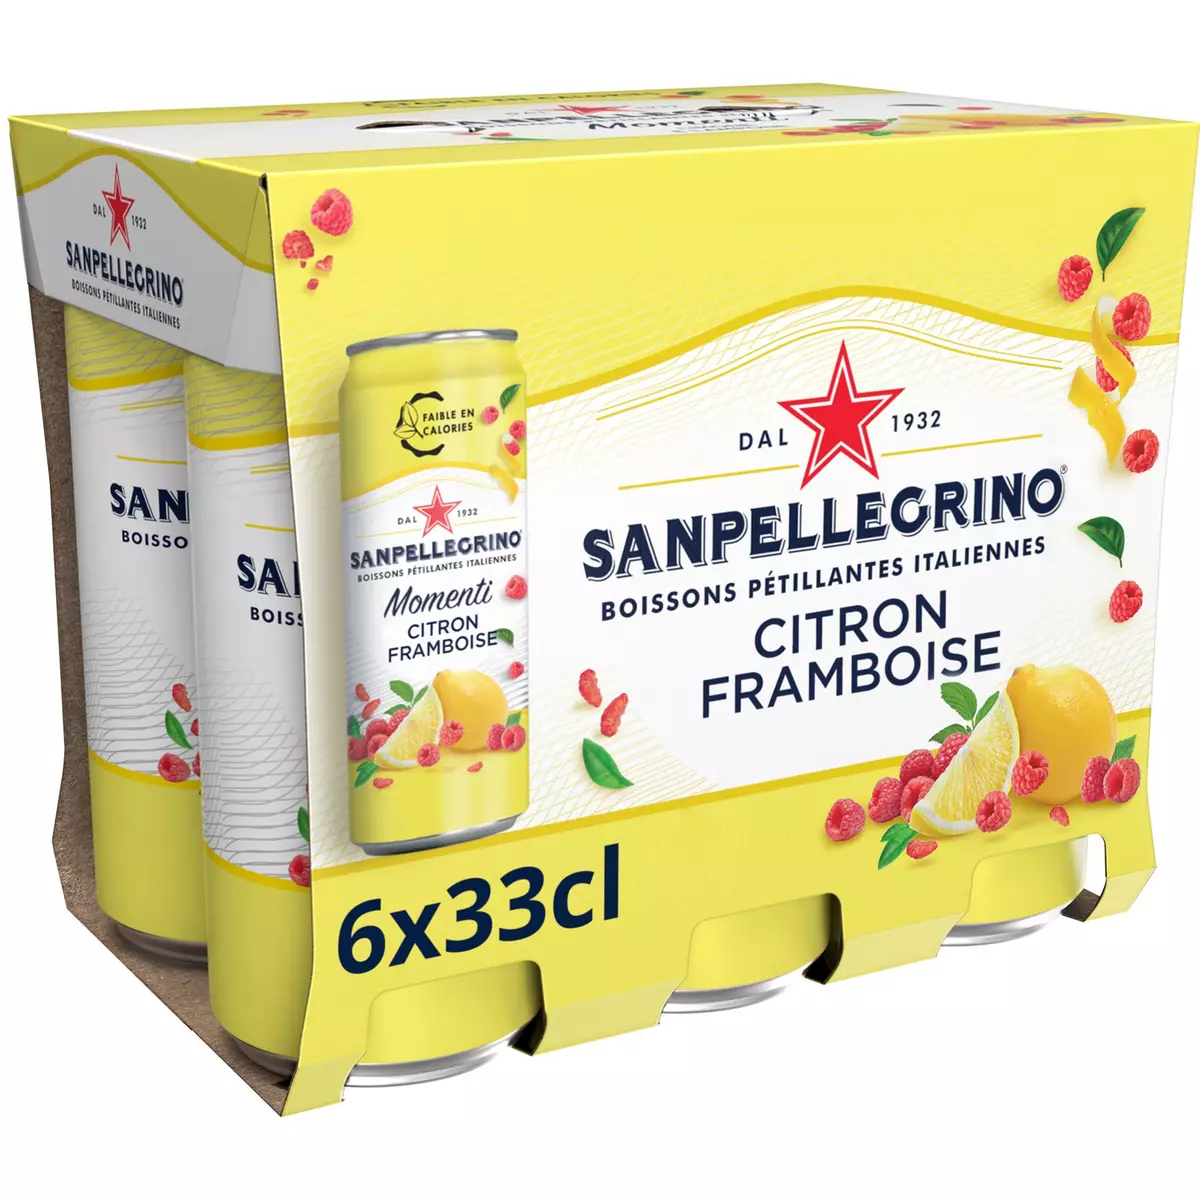 SAN PELLEGRINO Eau gazeuse aromatisée citron et framboise boîtes 6x33cl